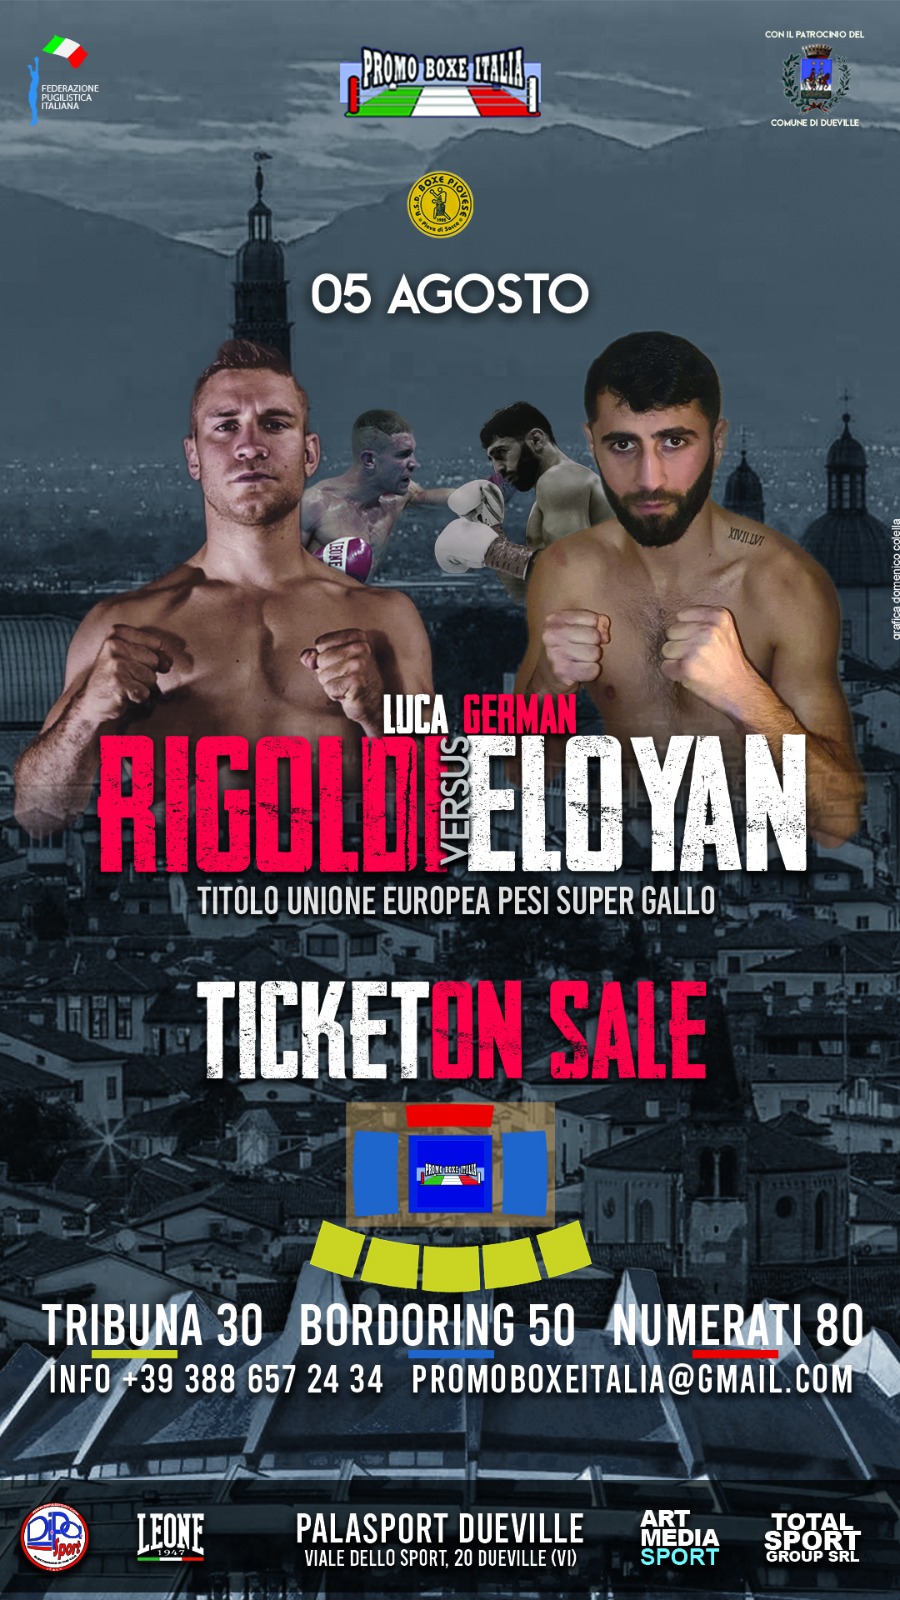 Il 5 agosto a Dueville (VI) Rigoldi vs Eloyan per il Titolo Supergallo UE - INFO TICKET